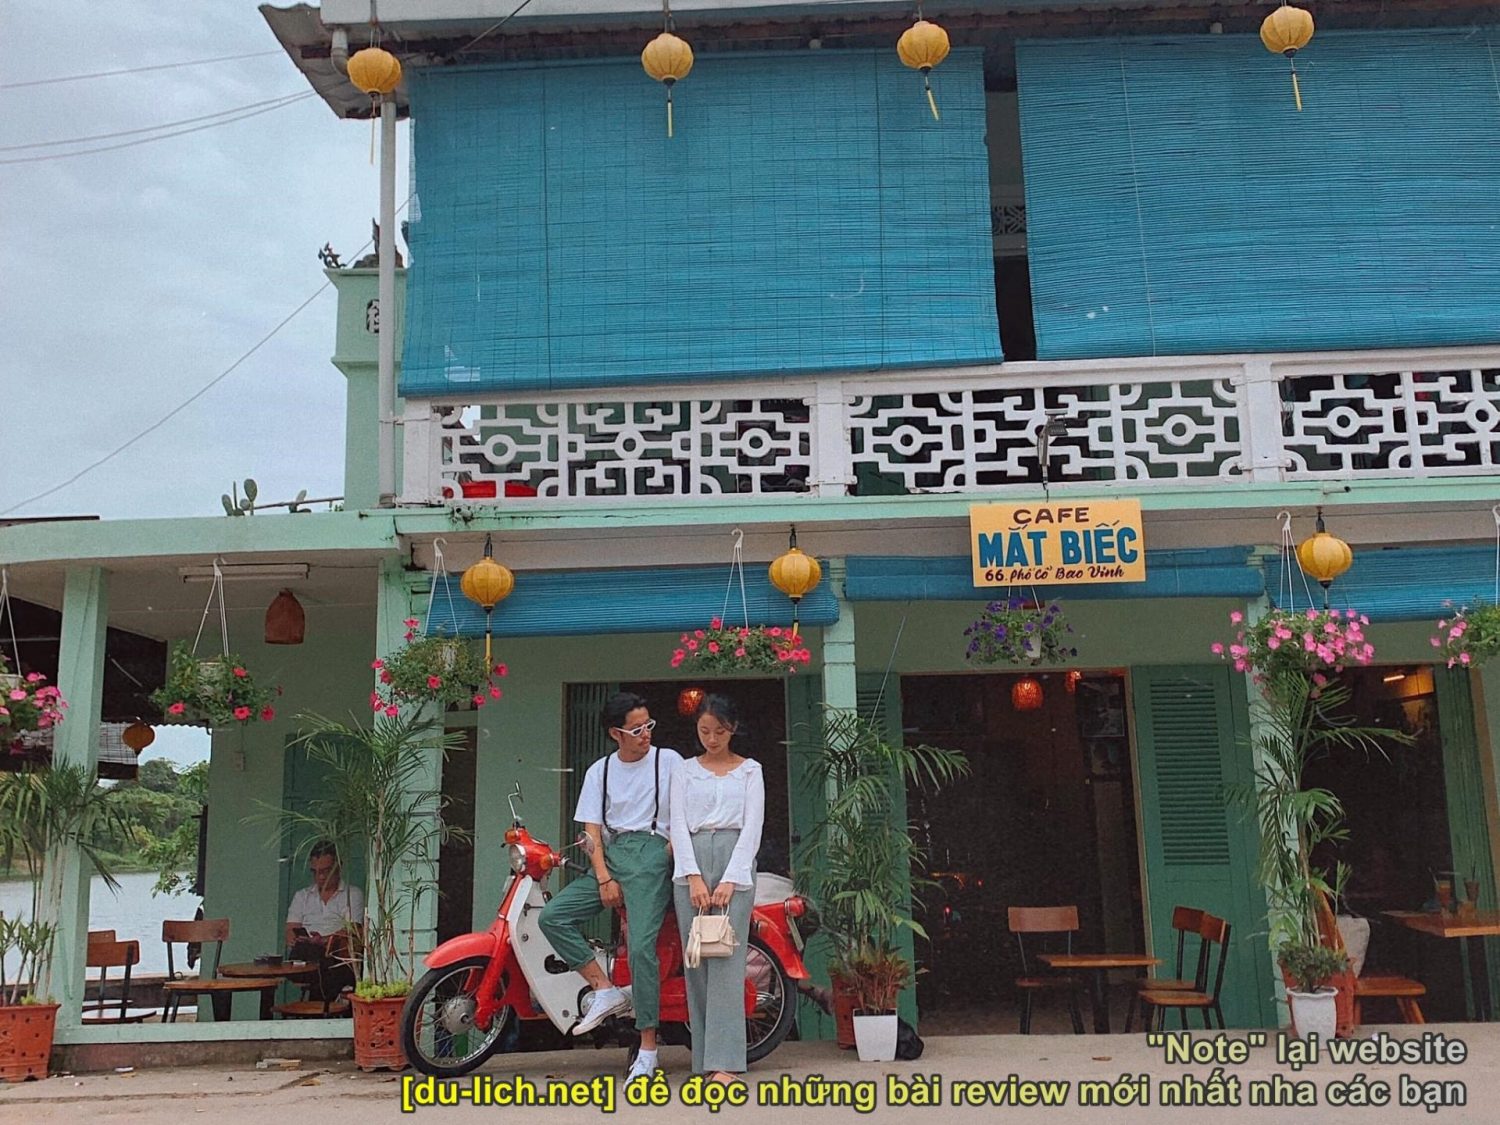 Hình ảnh check-in quán cà phê Mắt Biếc ở Bao Vinh - Huế